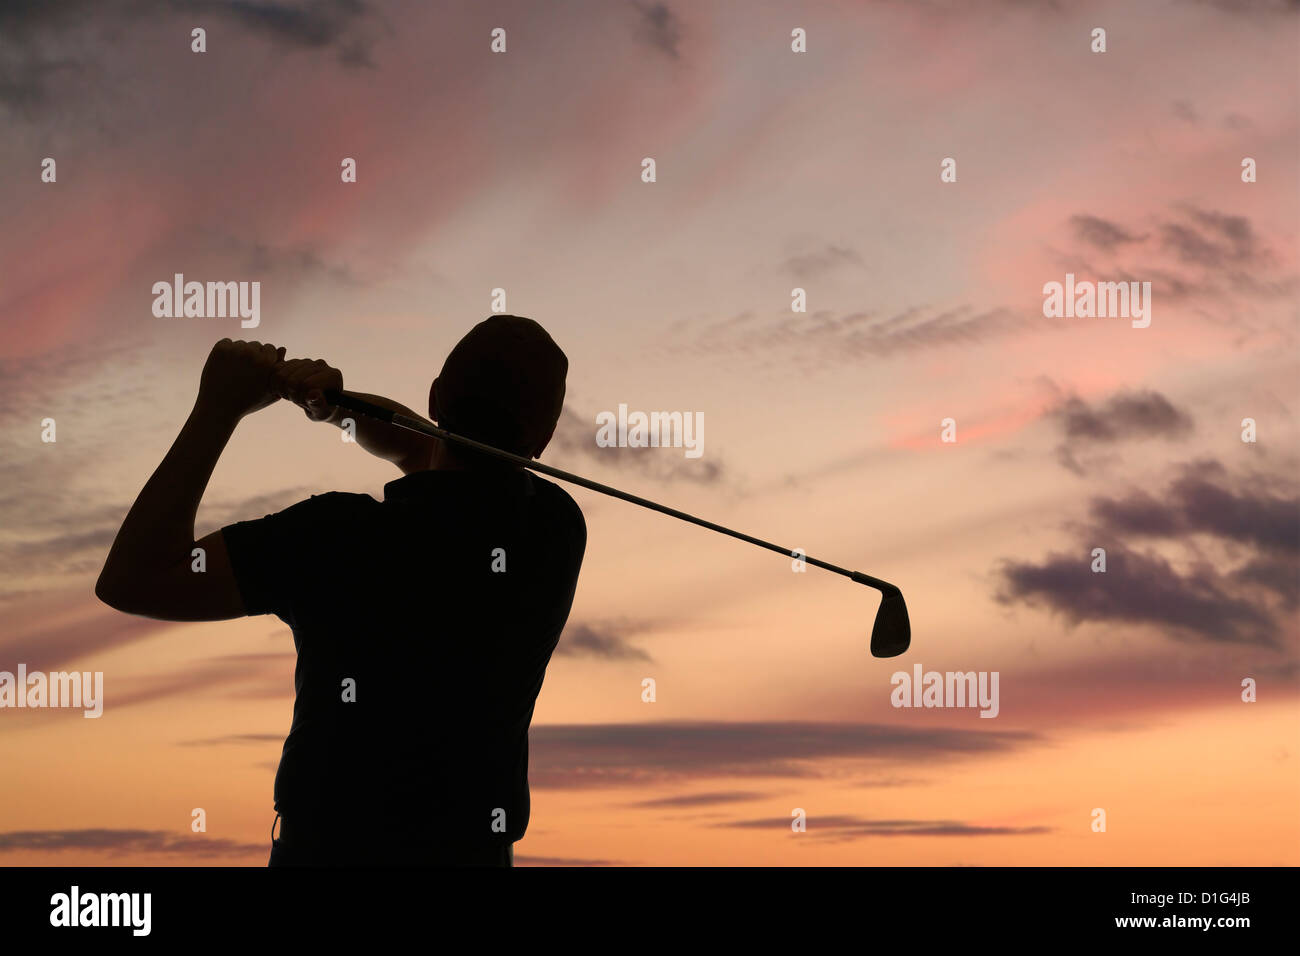 Golfeur balançant un club de golf silhouetted contre un ciel crépuscule, près Banque D'Images